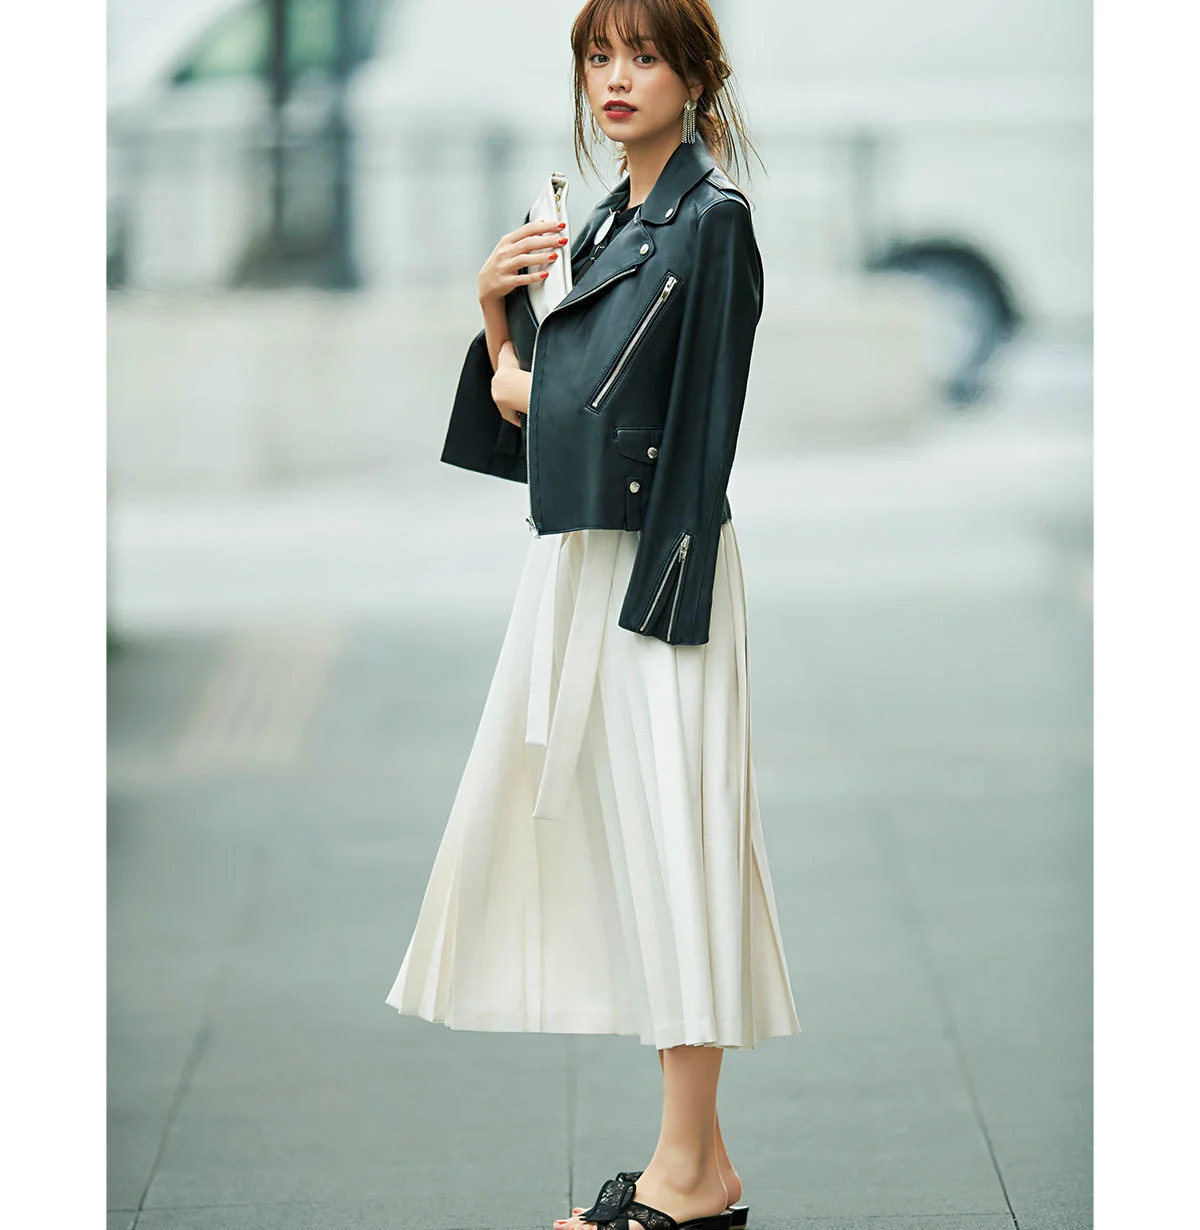 黒のレザージャケット×白プリーツスカートのモノトーンコーデ